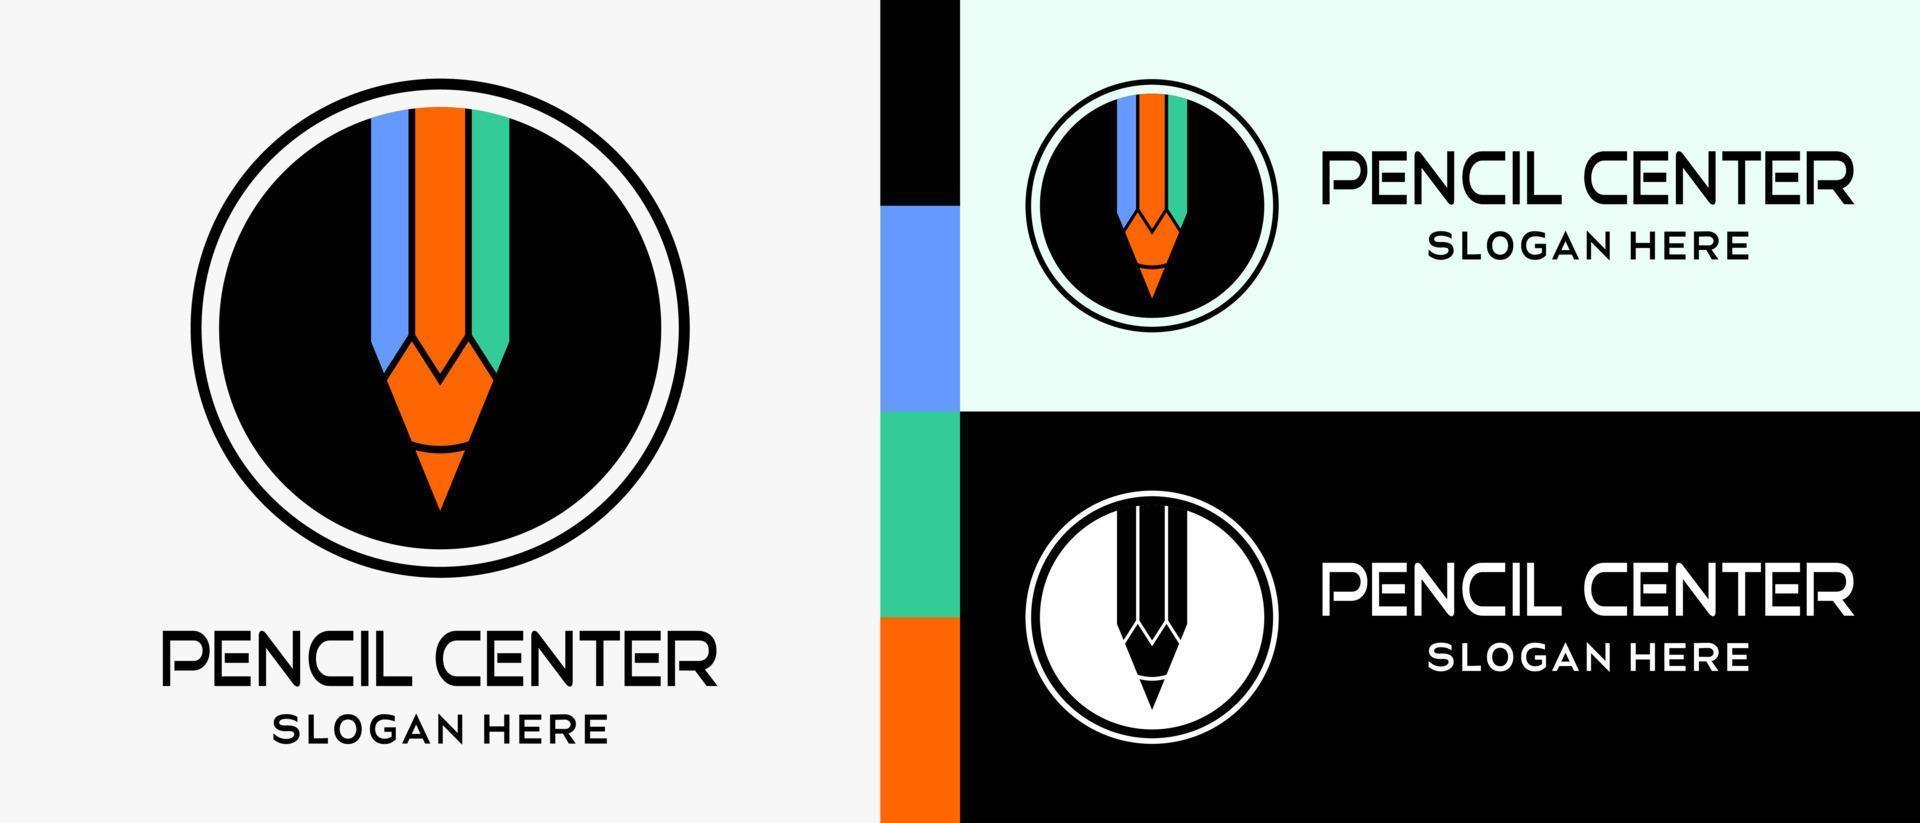 plantilla de diseño de logotipo de lápiz con concepto creativo y simple en círculo. ilustración de logotipo de vector premium